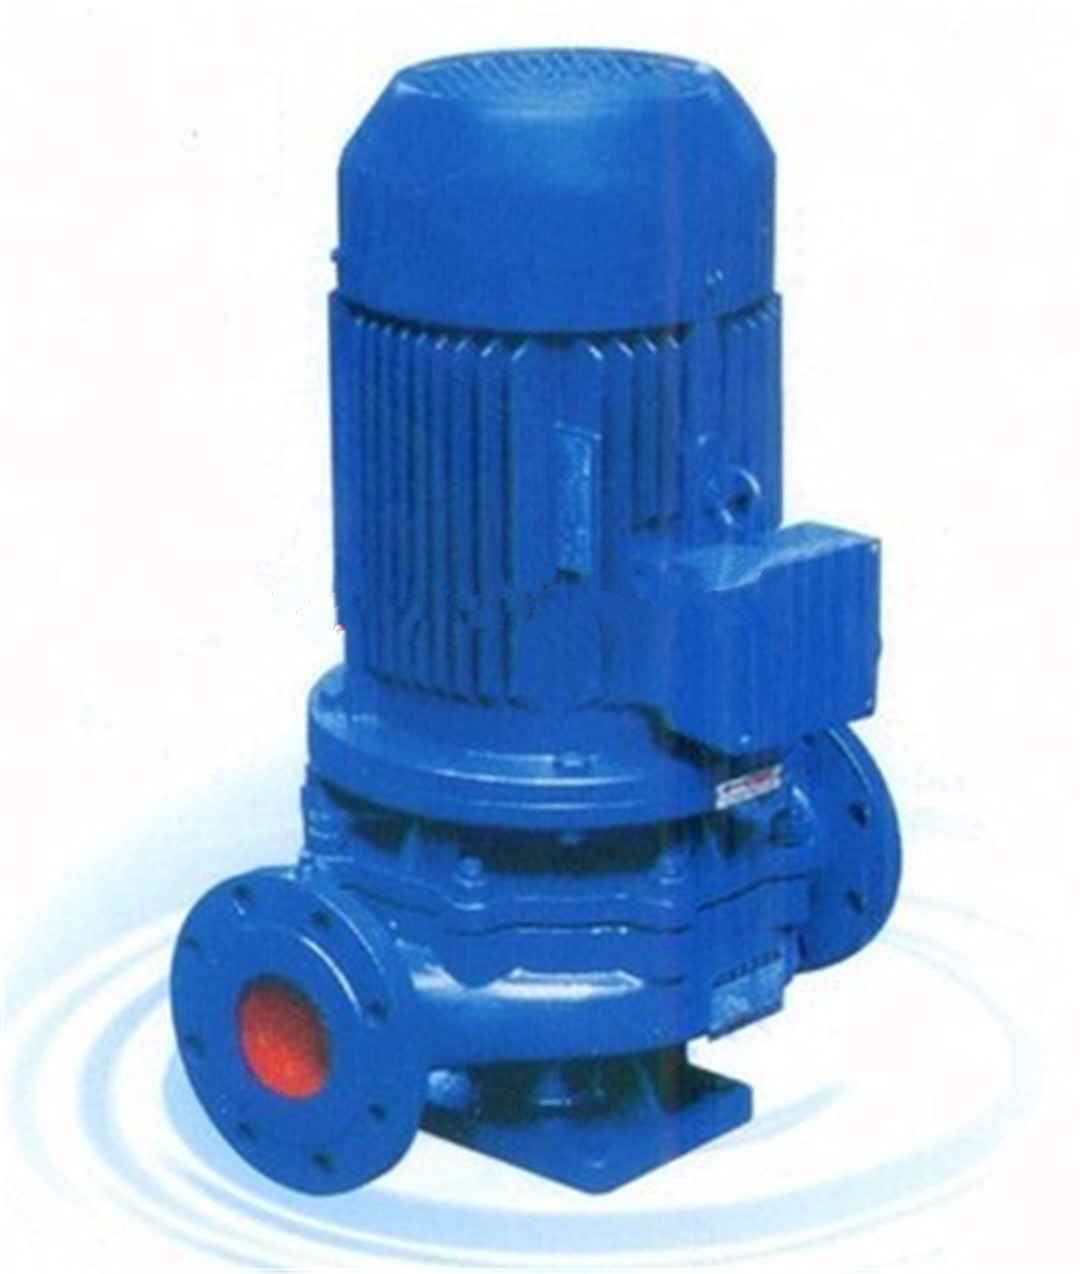 立式管道泵ISG50-250(I)A管道泵适用作于高层建筑加压供水